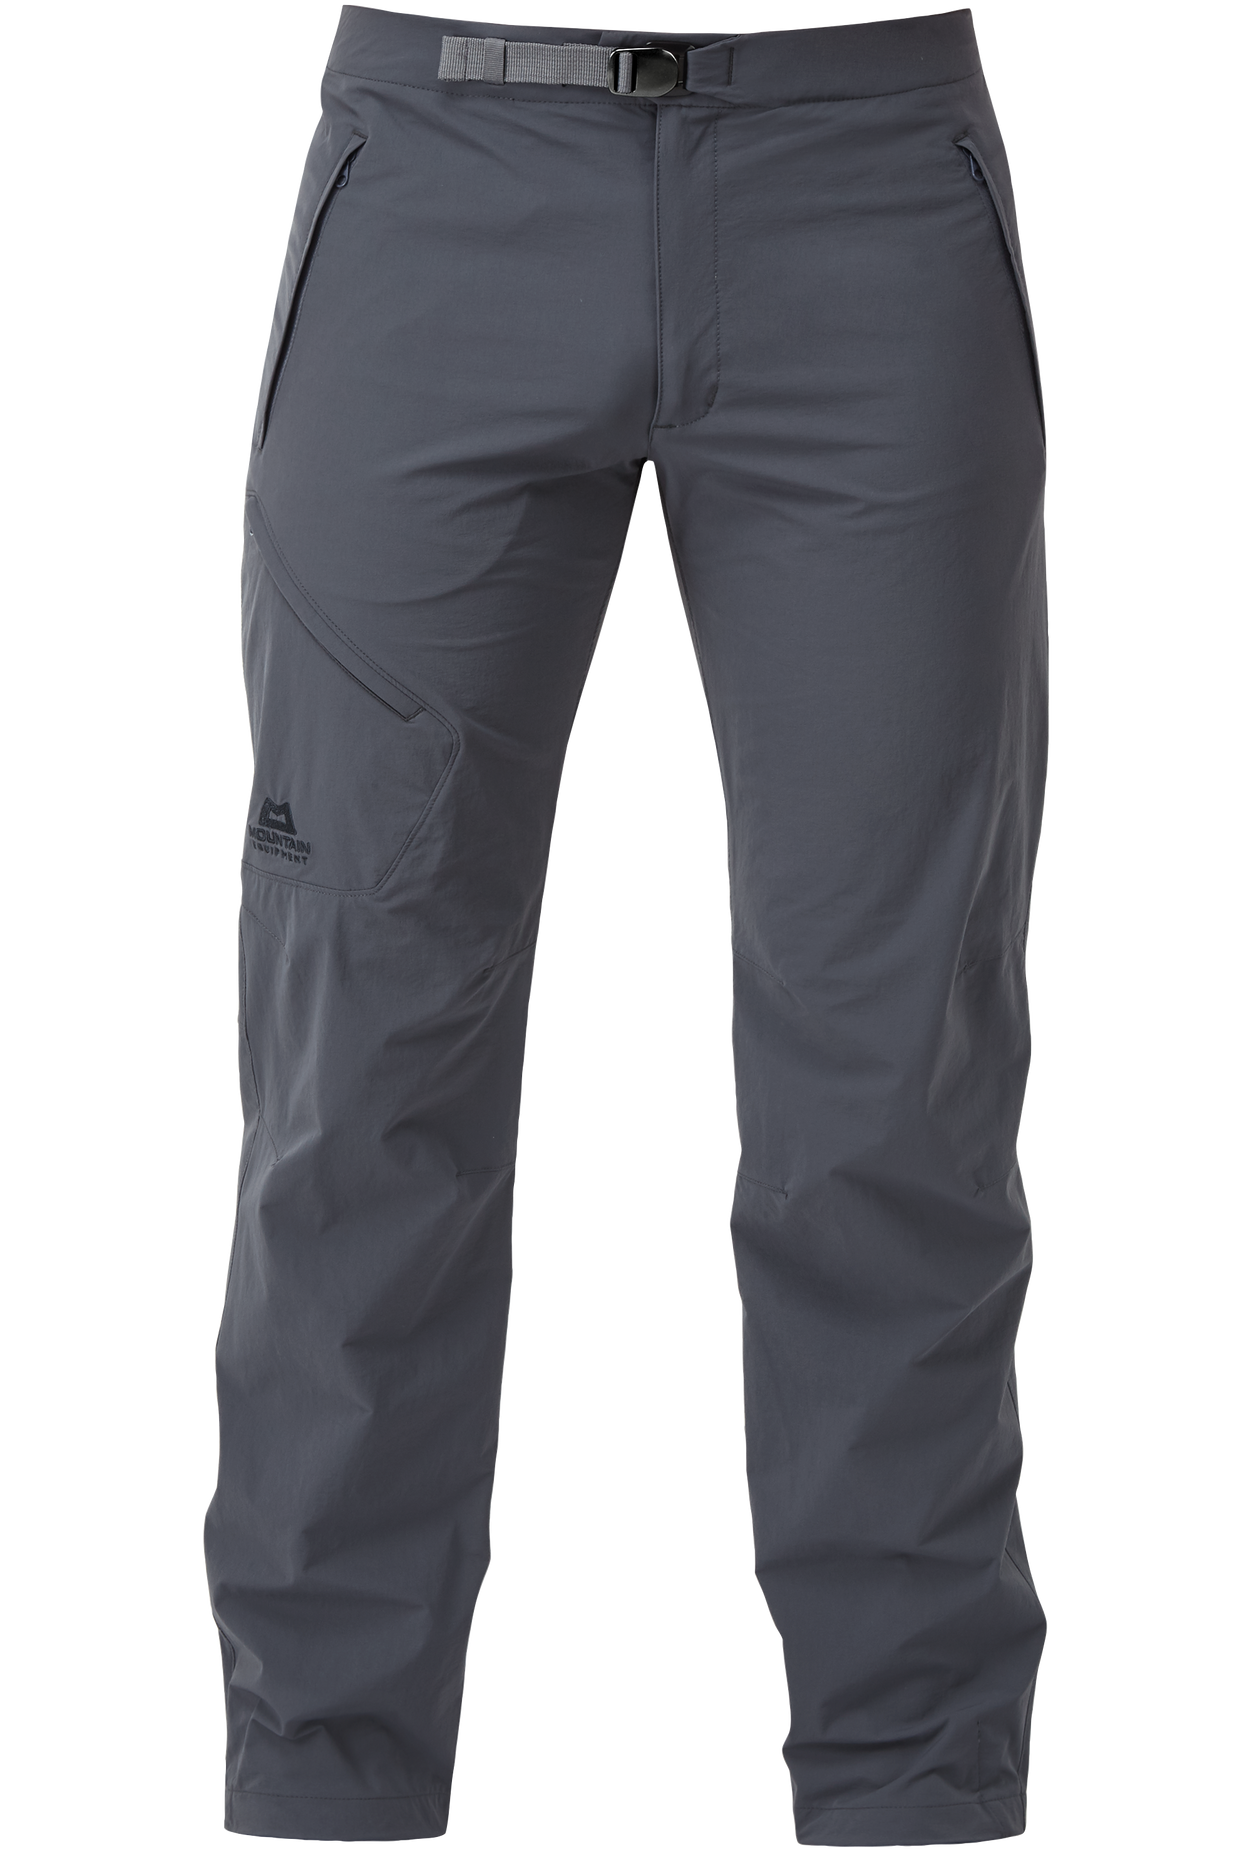 Mountain Equipment pánské softshellové kalhoty Comici Pant - zkrácené Barva: Ombre Blue, Velikost: 32/M